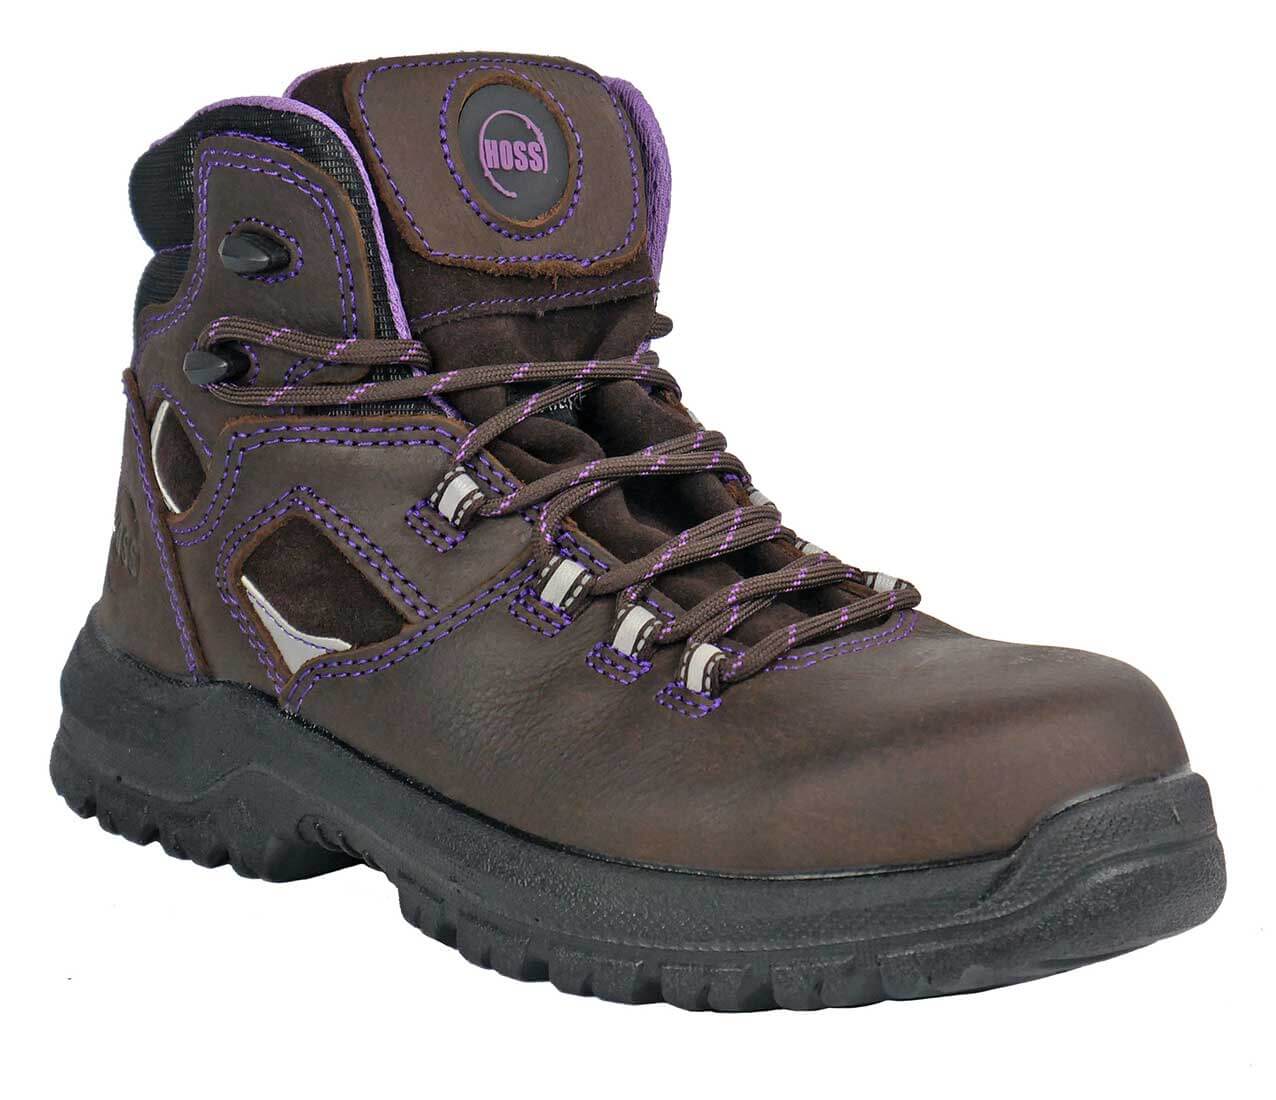 Hoss Boots 70419 Lacy Women's 6 Waterproof Composite Toe Slip Resistant Work Boot - Extra Depth